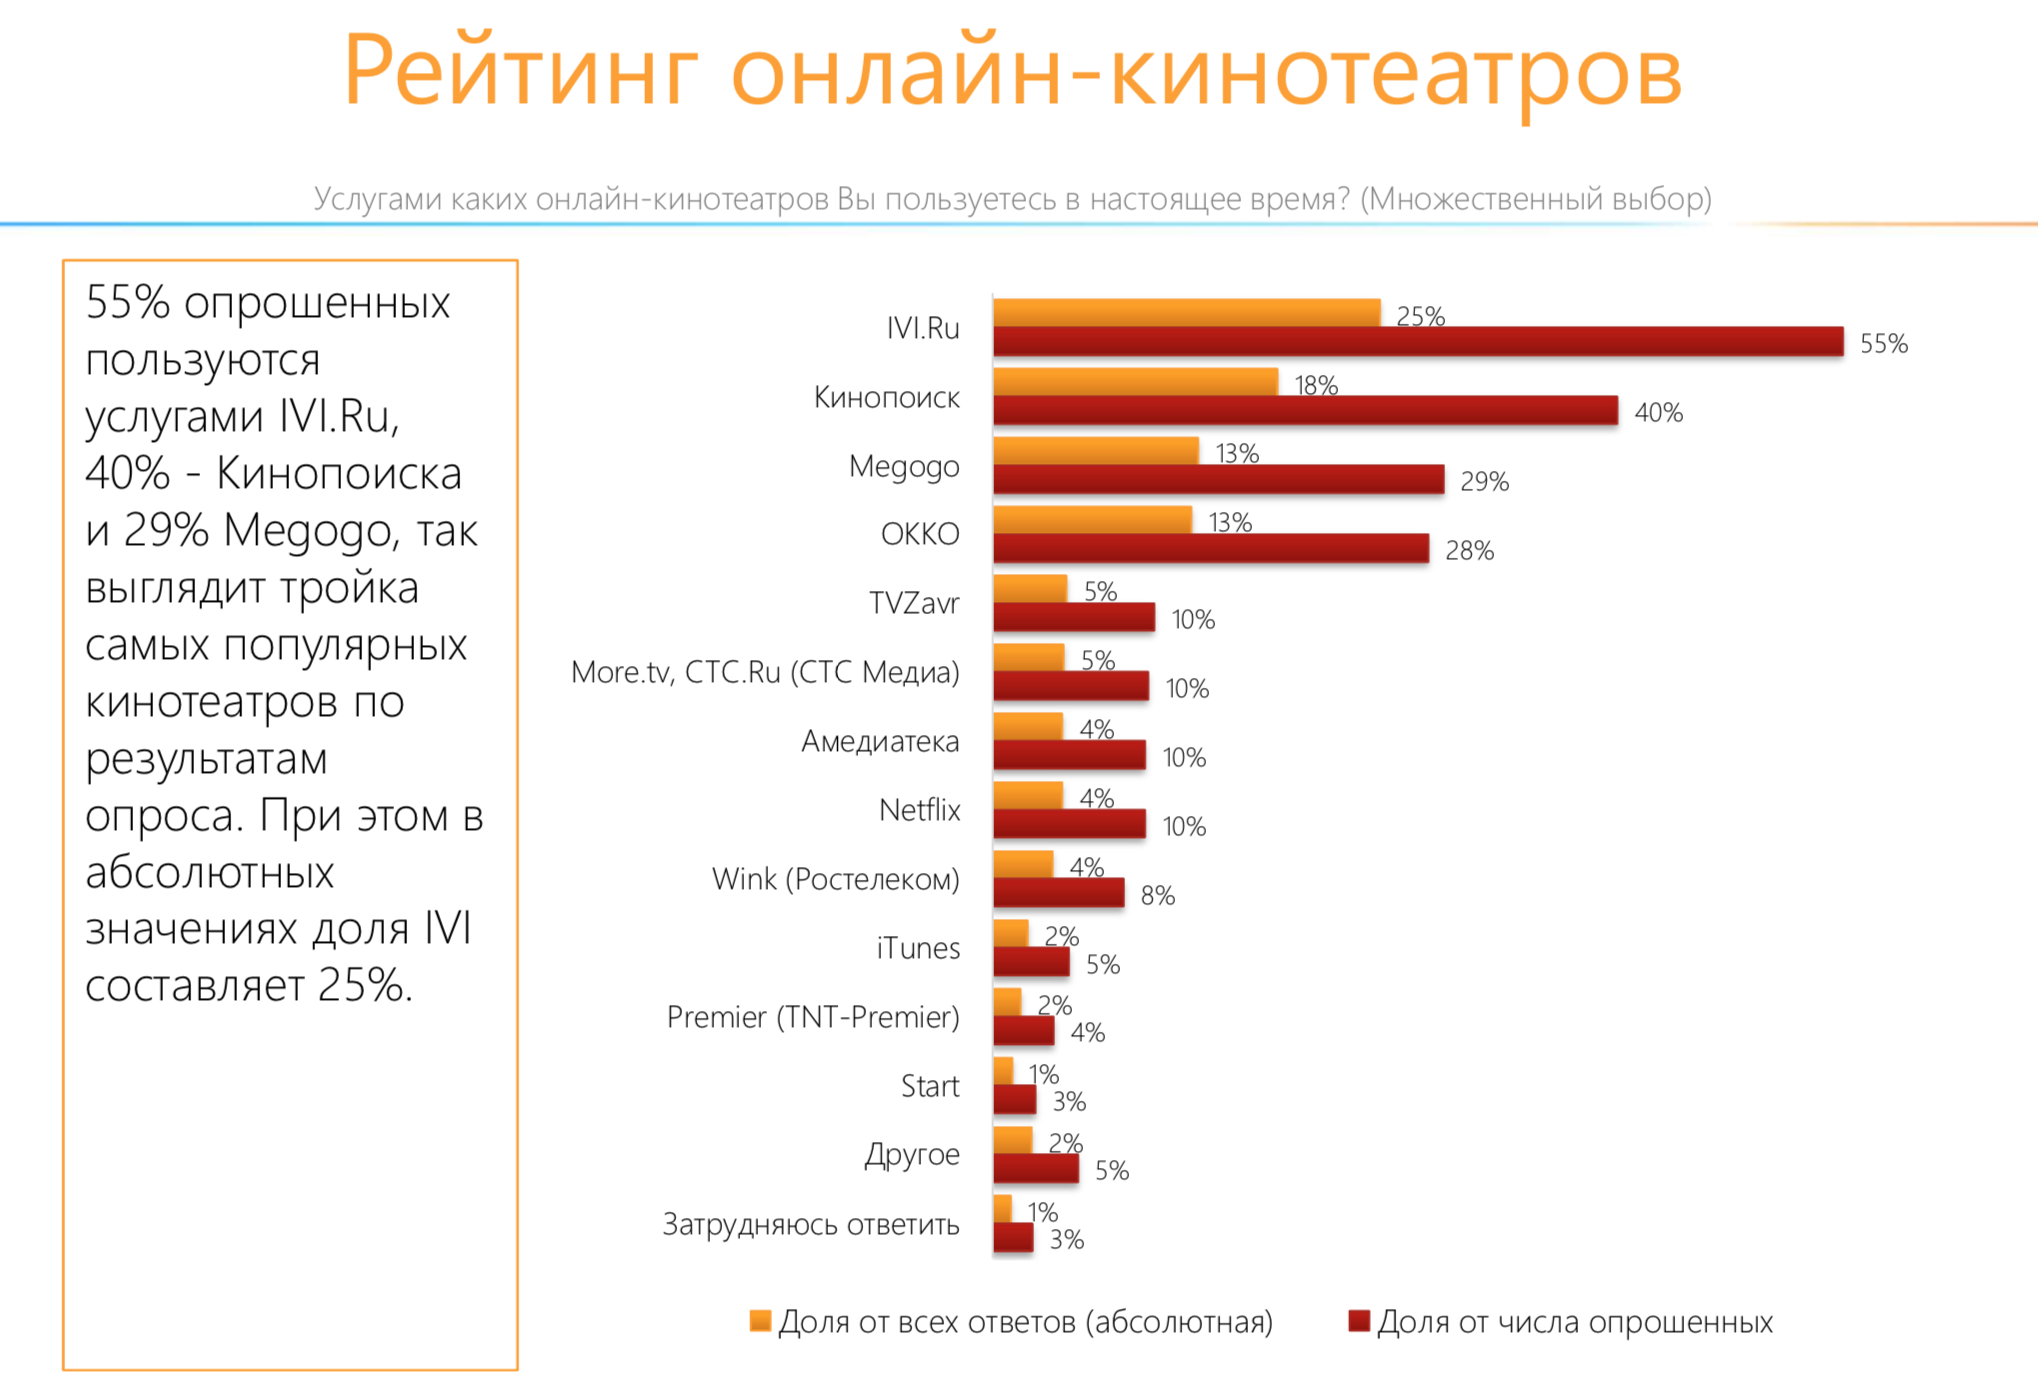 Рейтинг онлайн-кинотеатров в России за 2021 год